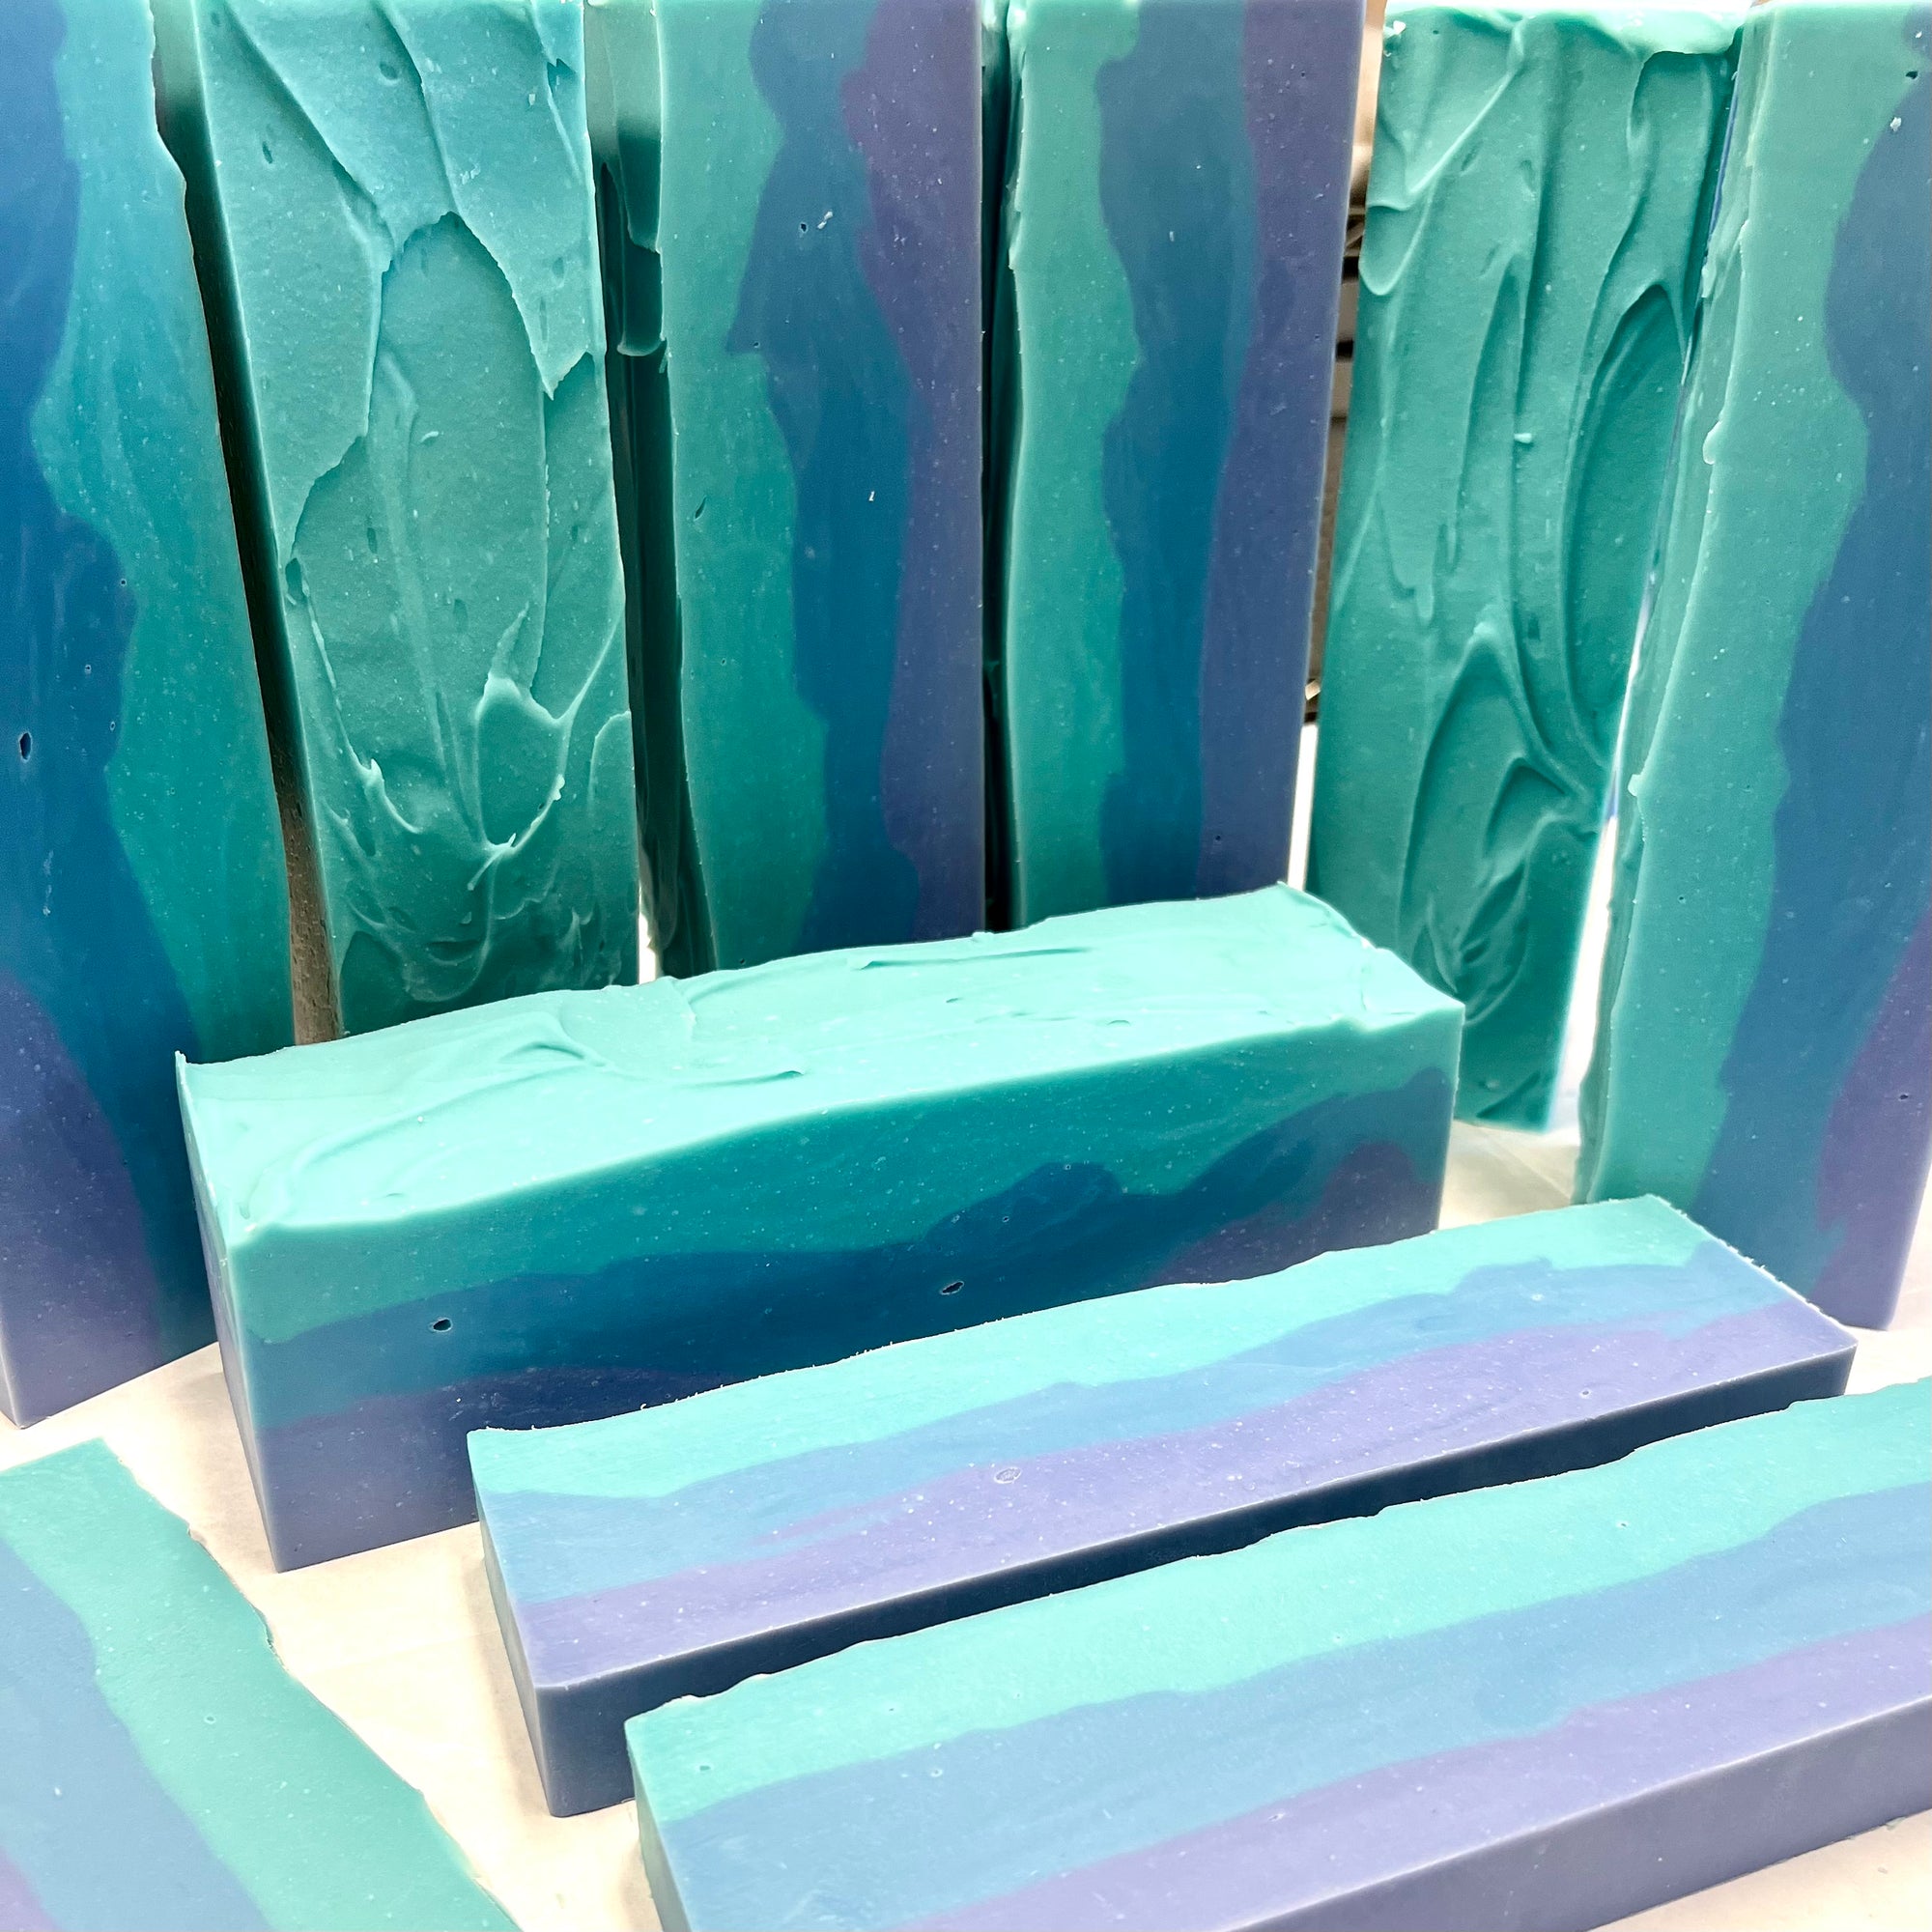 Tahoe Blue-Luxe Soap